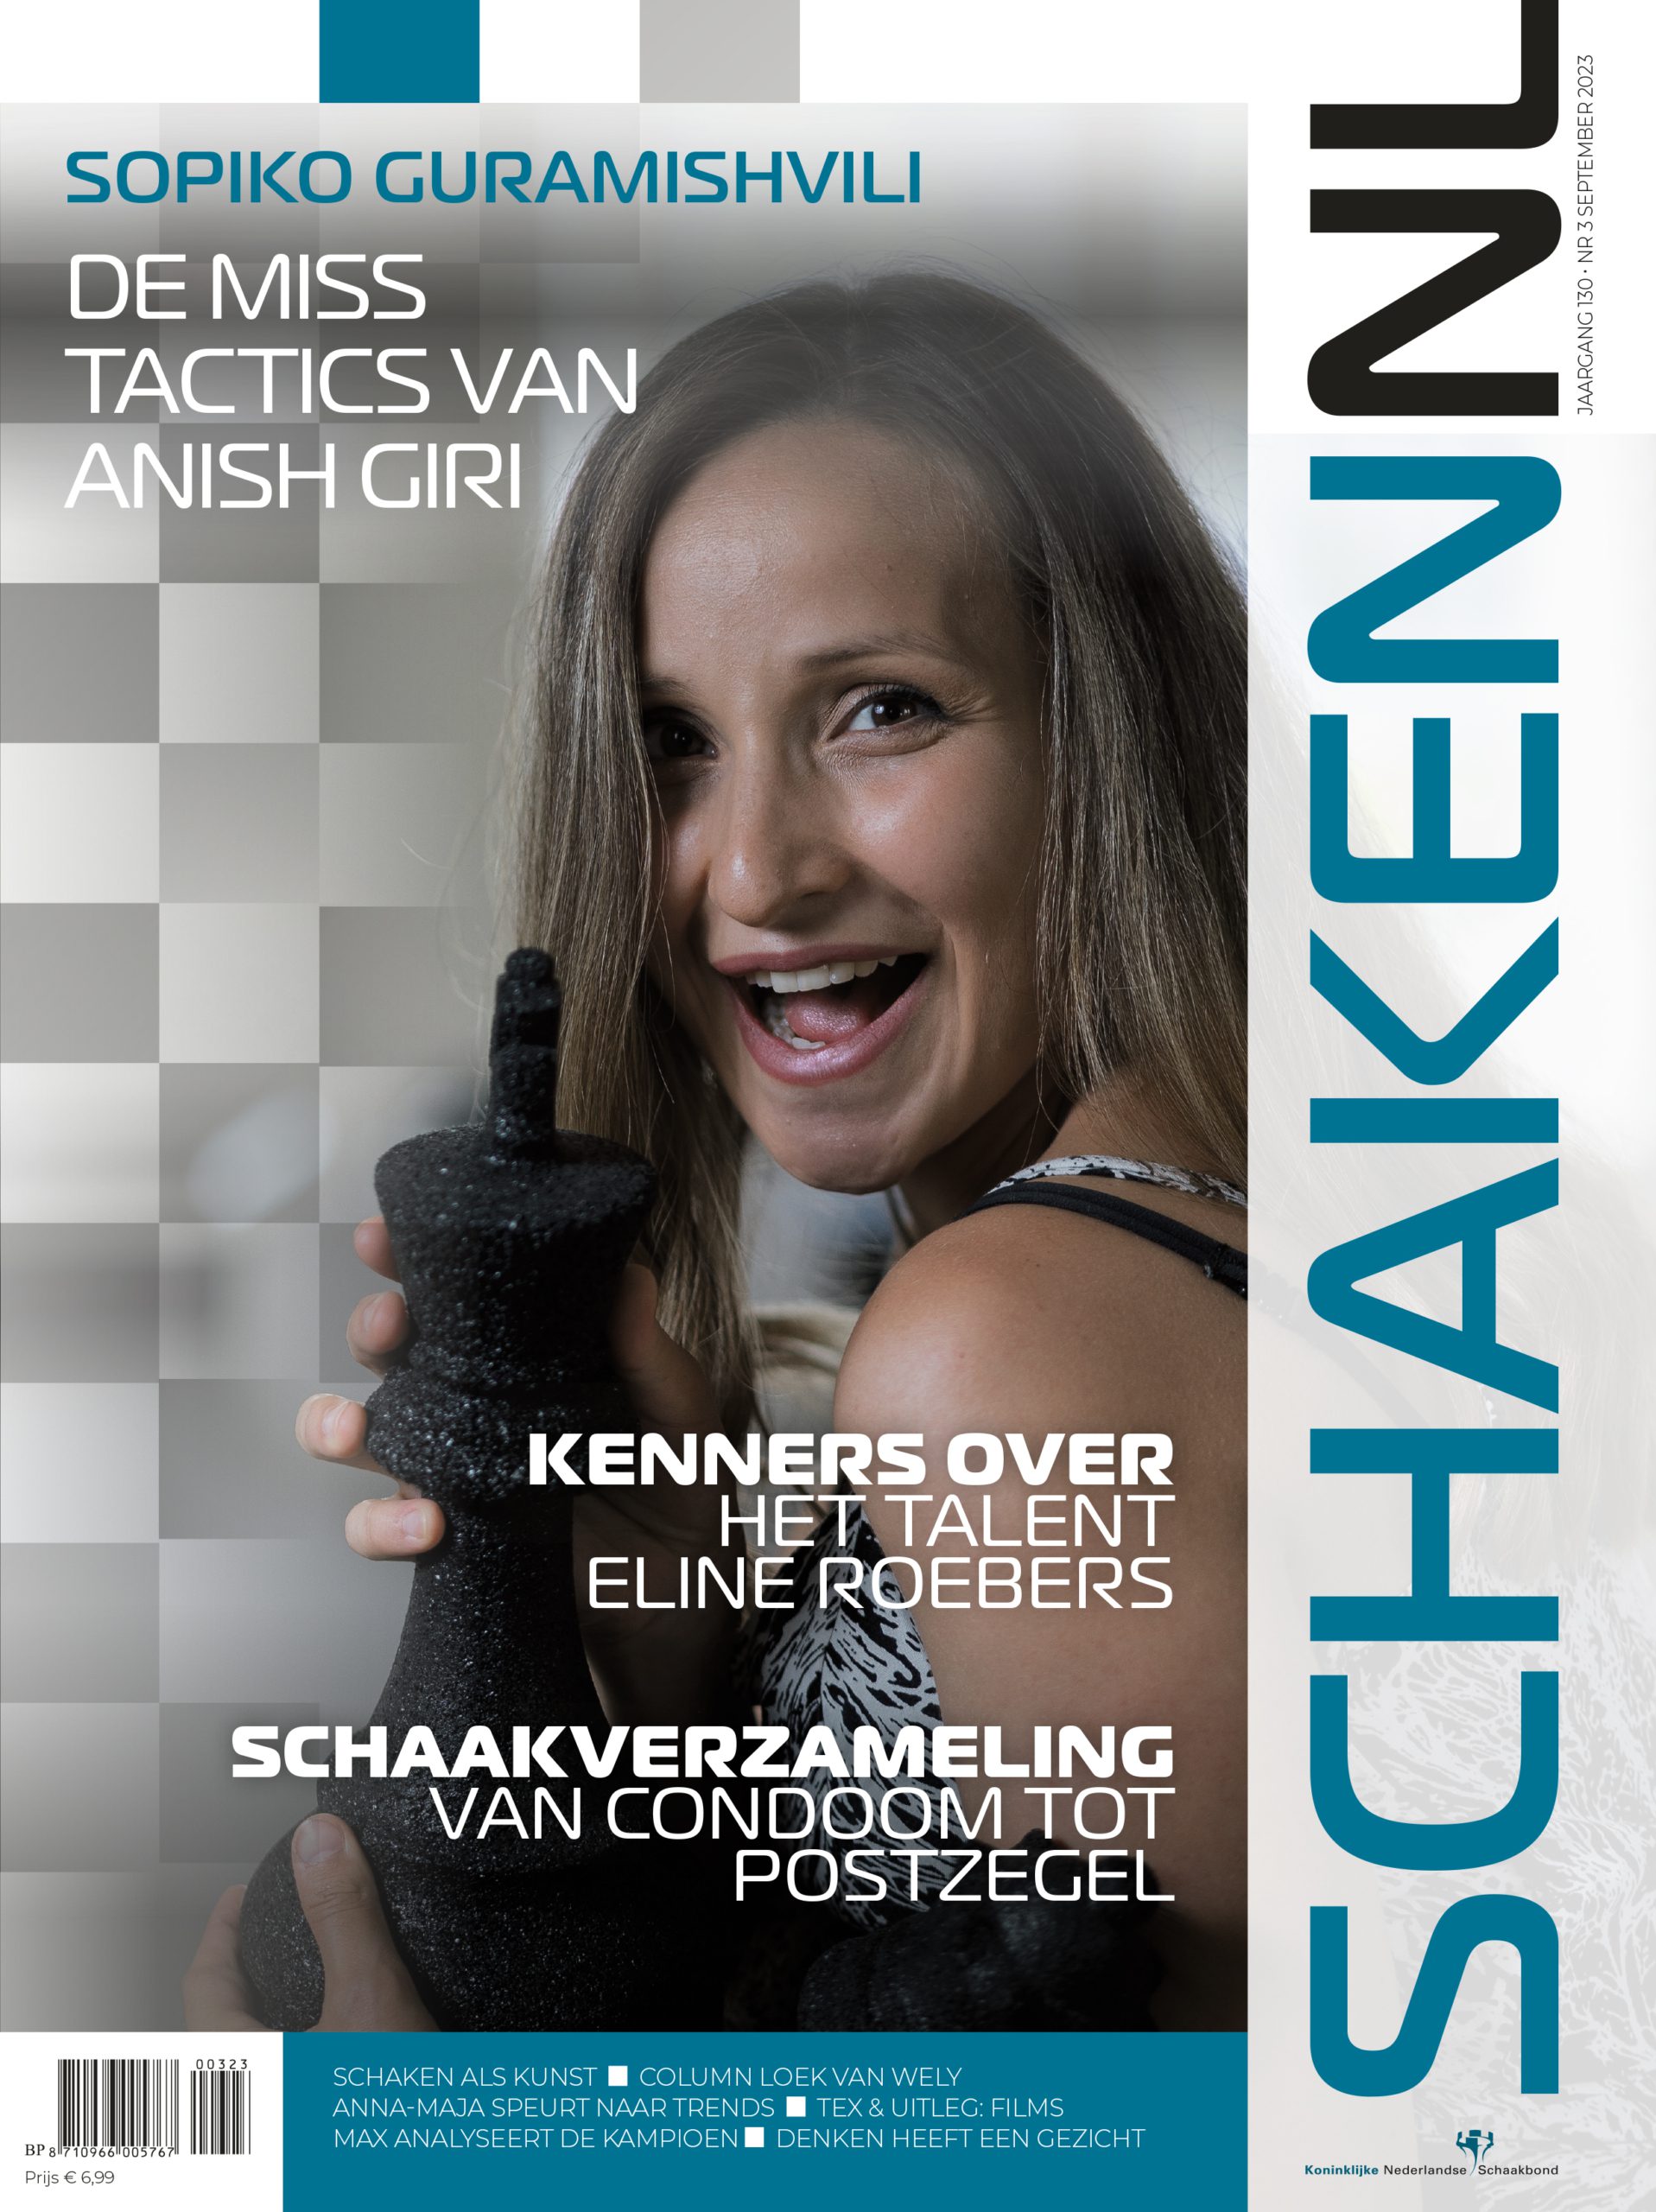 Nummer 3 van Schaken.nl verschijnt deze week